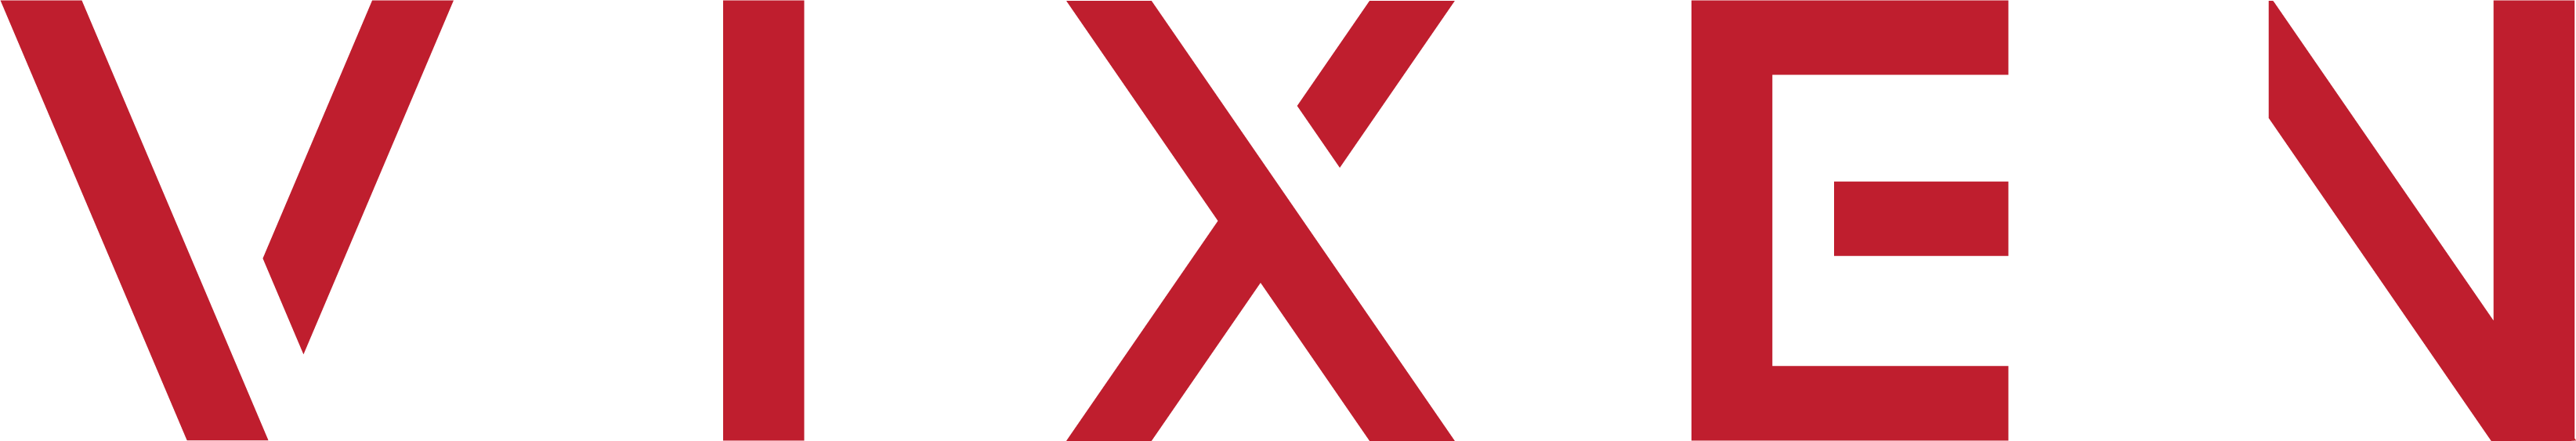 빅슨커뮤니케이션의 계열사 (주)빅슨커뮤니케이션의 로고